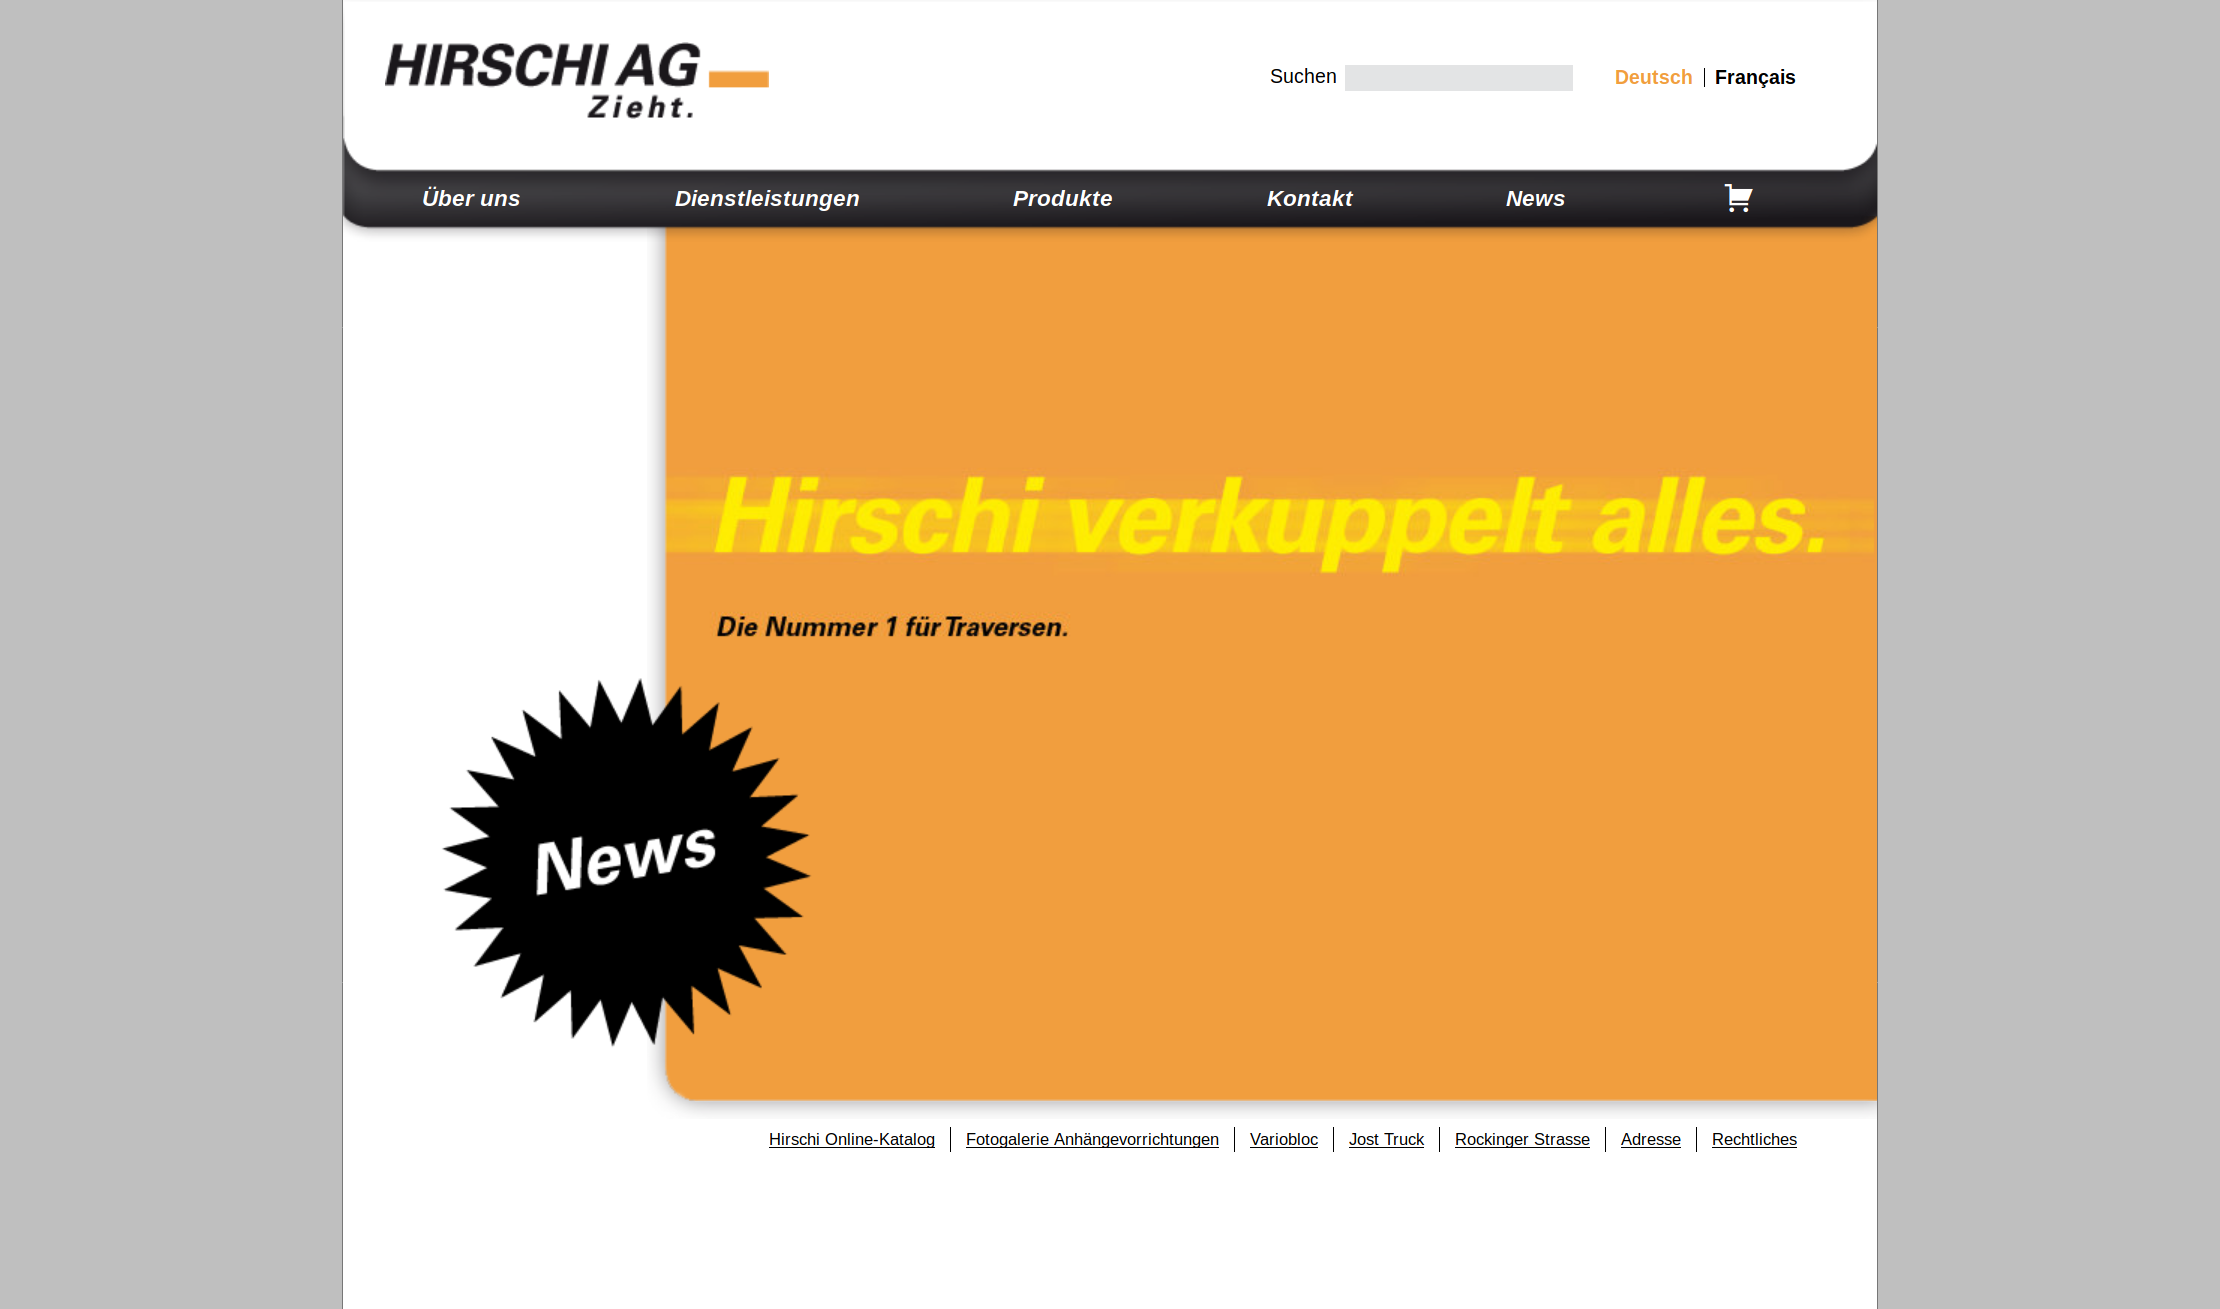  / hirschi.com